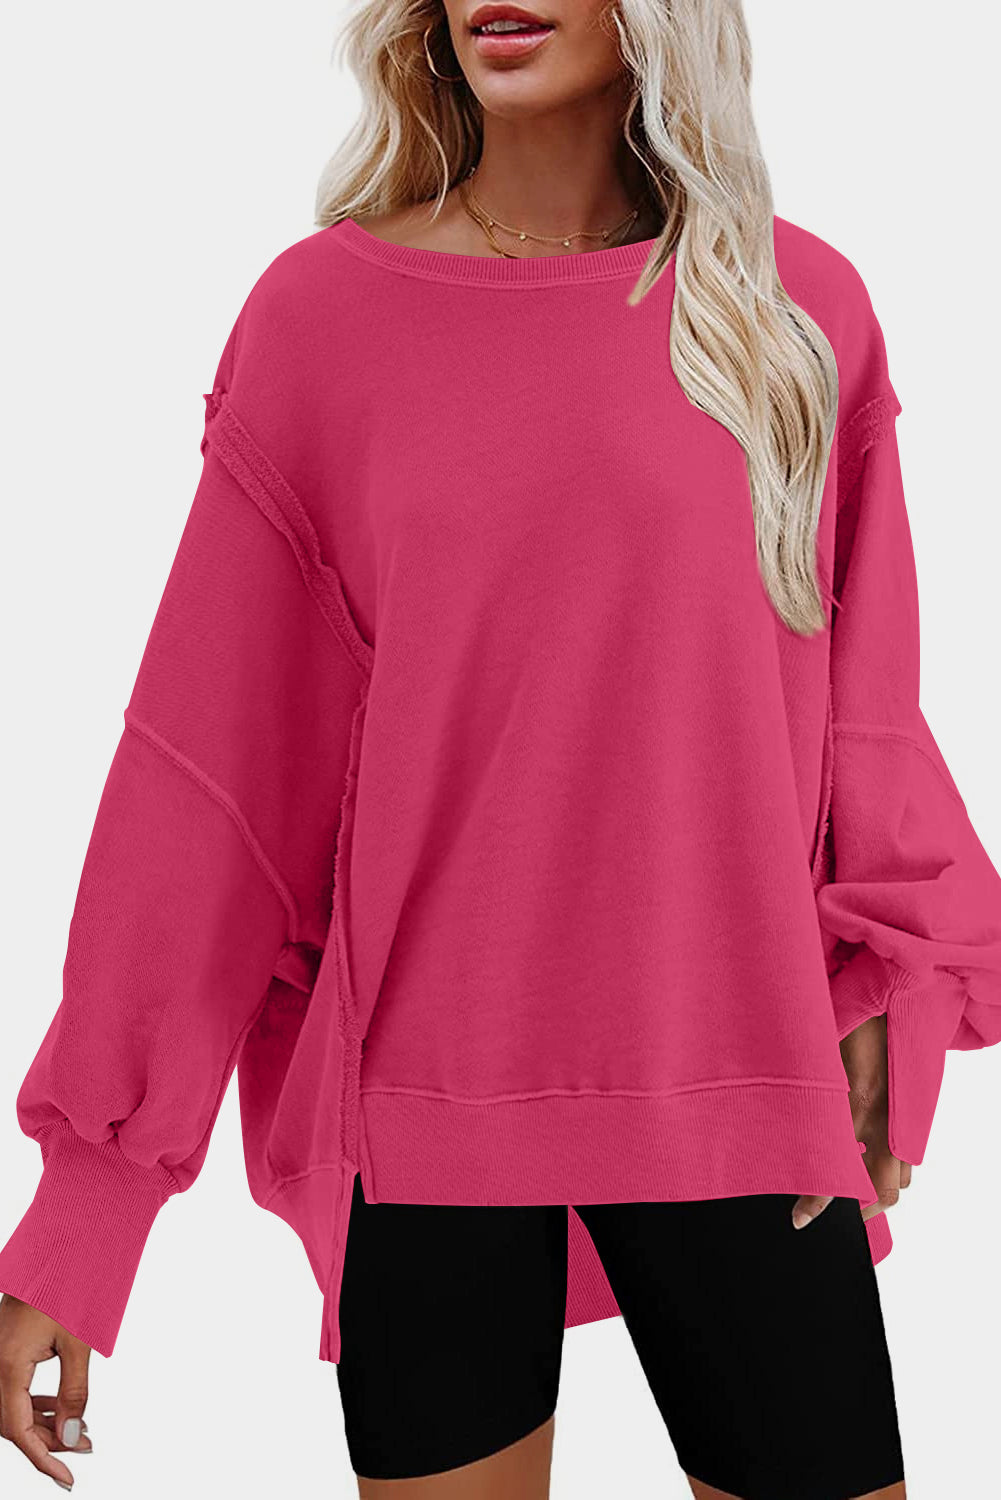 Sweatshirt in Rose mit freiliegender Naht, überschnittener Schulter, Schlitz und hohem, niedrigem Saum